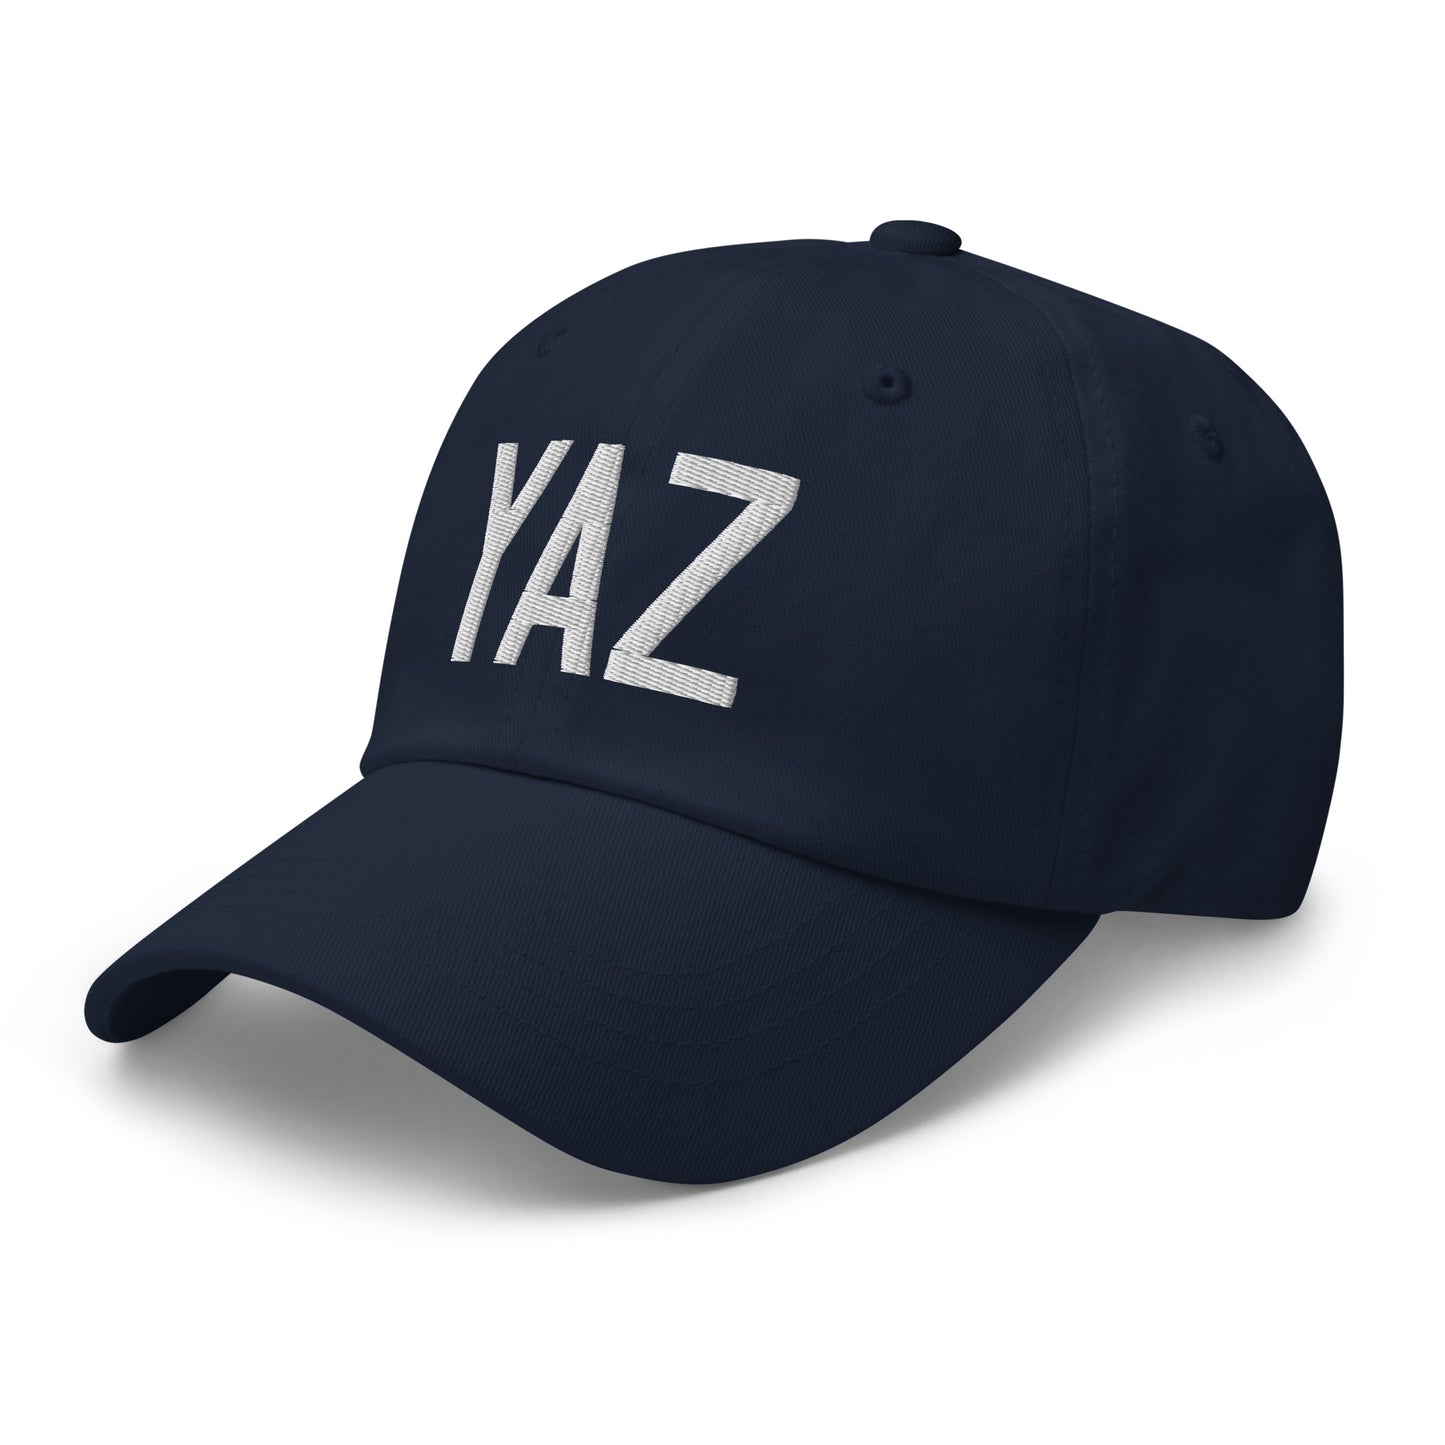 Airport Code Baseball Cap - White • YAZ Tofino • YHM Designs - Image 18